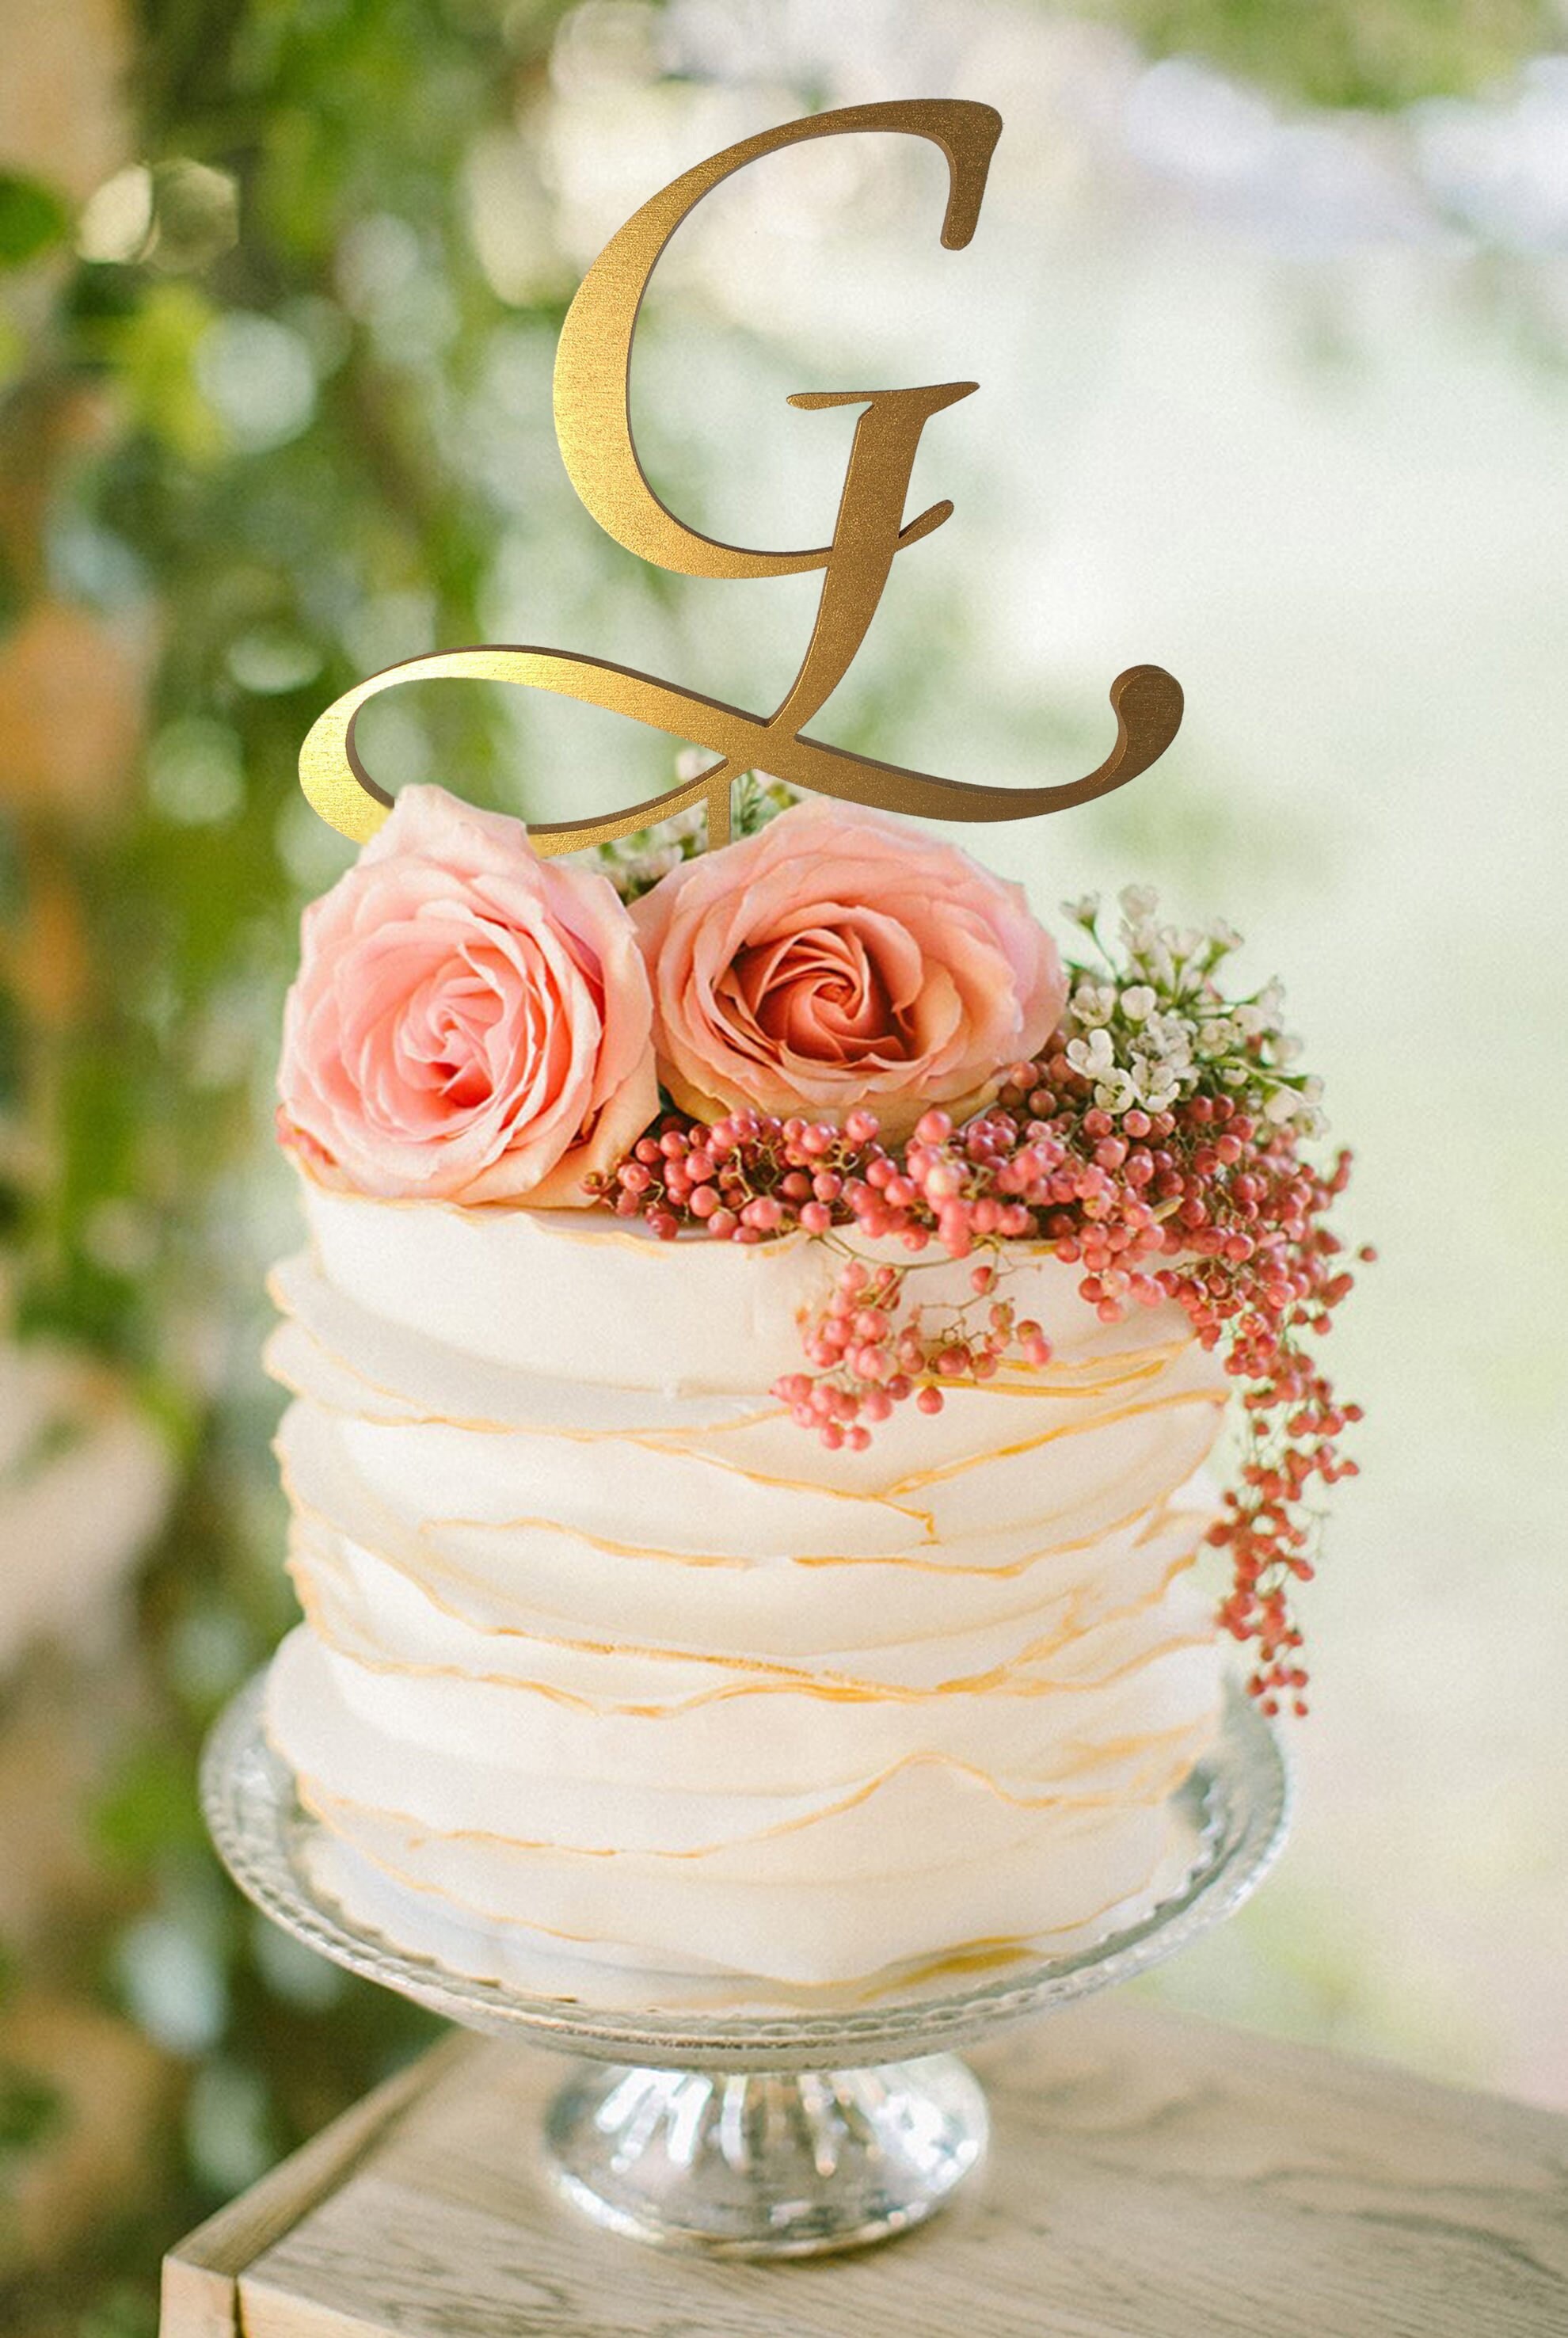 Cake topper wedding cake topper for wedding letters cake topper rustic cake topper gold or silver cake topper wooden cake topper